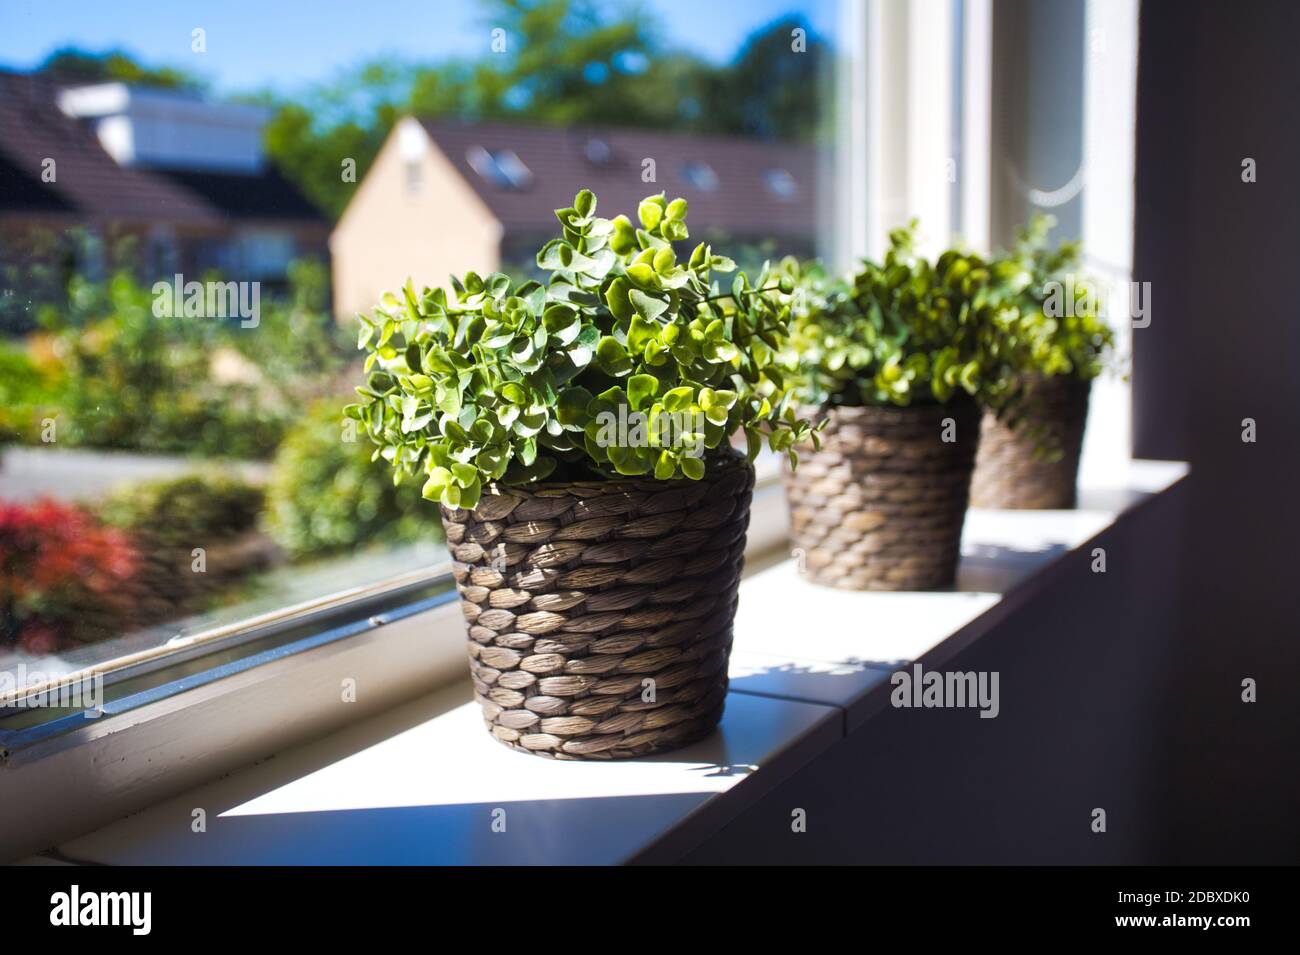 Trois plantes vertes dans des paniers en osier sur le rebord de la fenêtre d'une belle maison dans un quartier, vue des maisons par la fenêtre, rétro intérieur moderne co Banque D'Images